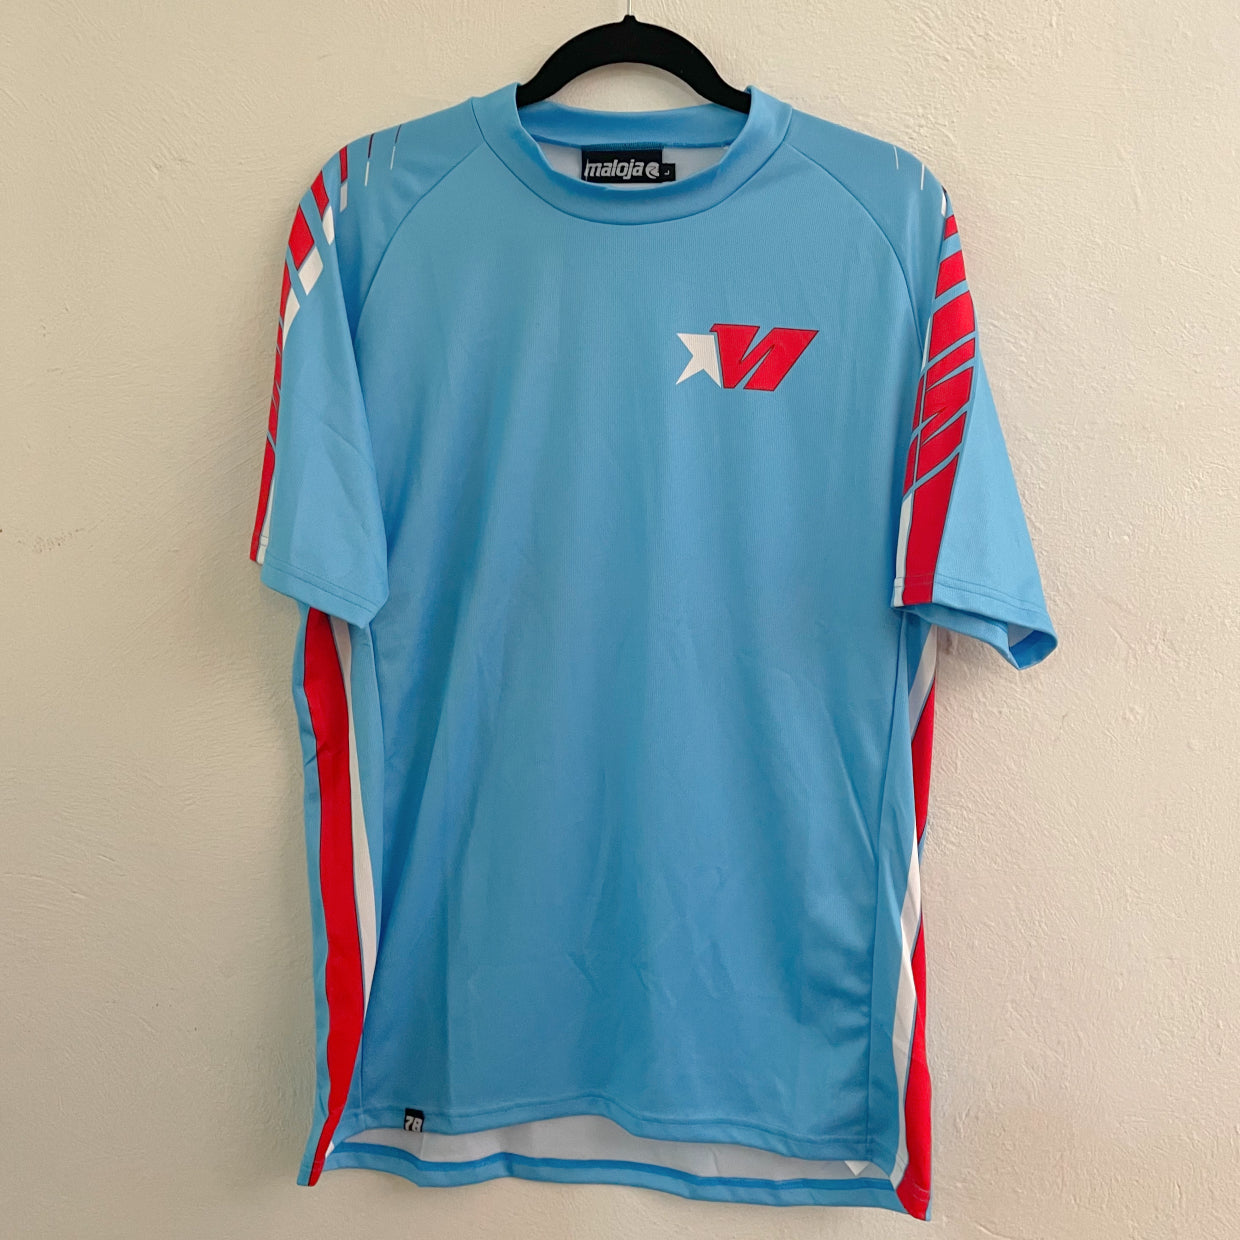 MALOJA Freeride Shirt 1/2 - 4 Speed - sky - M